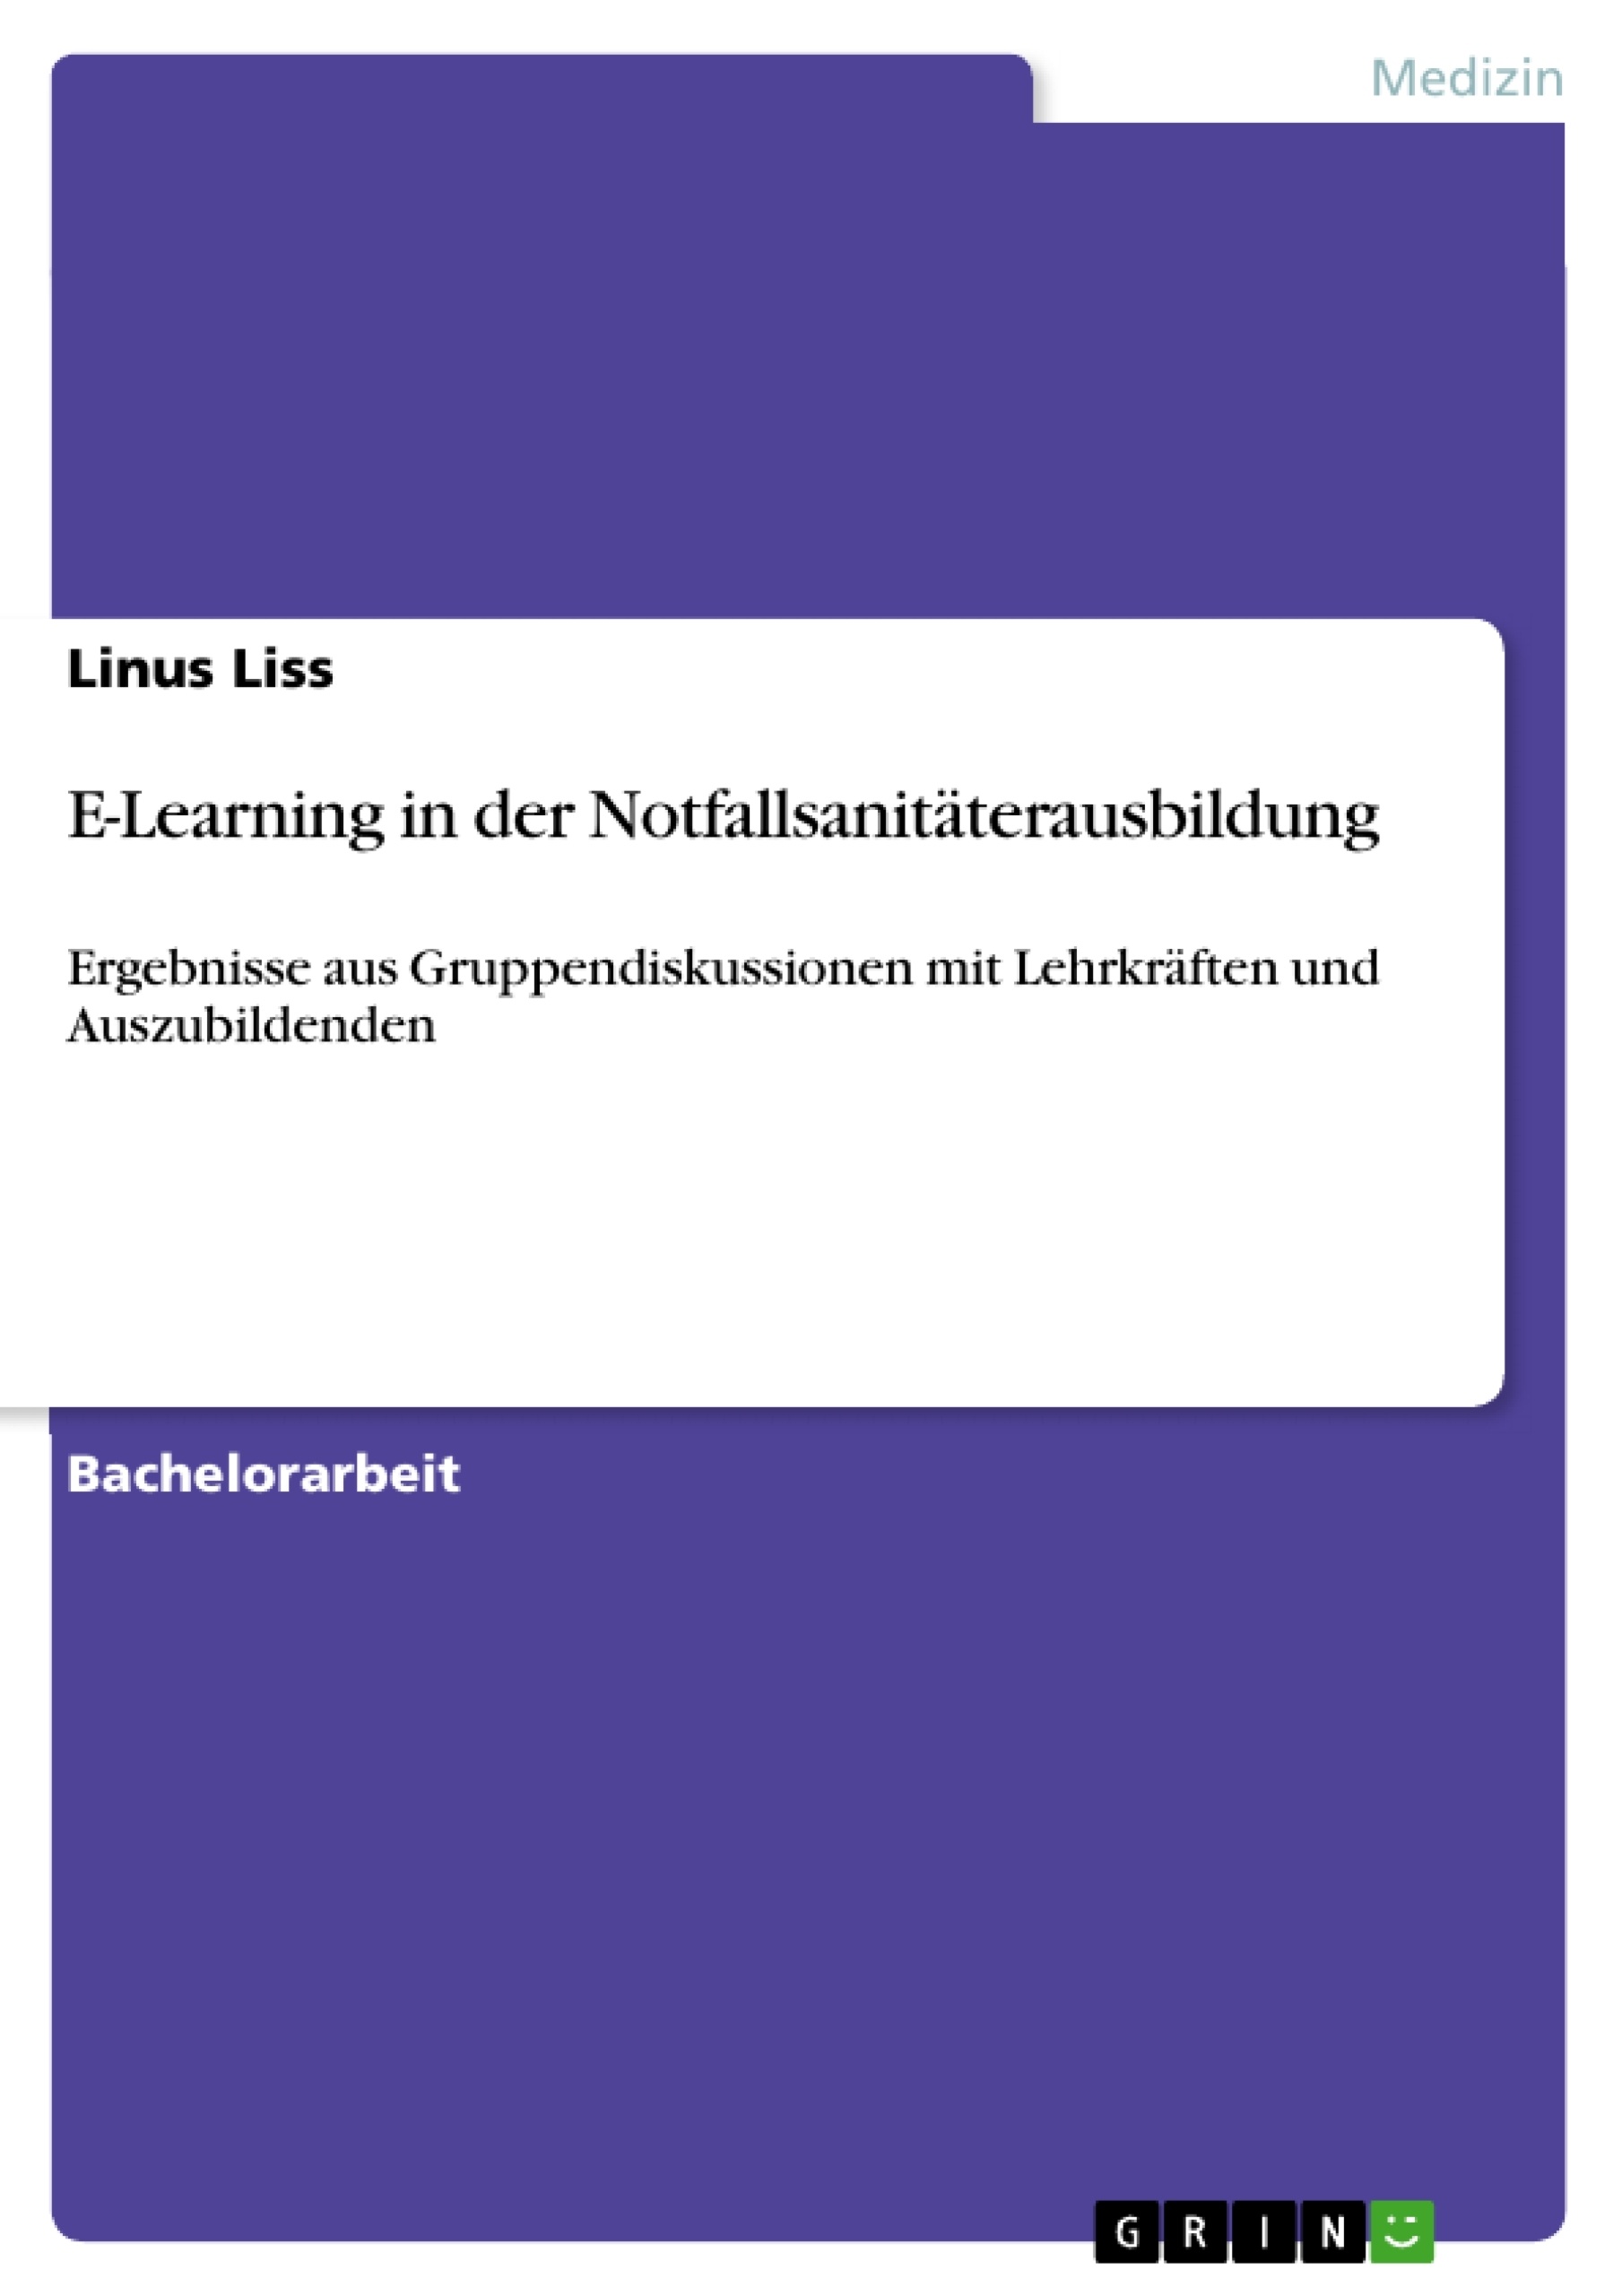 Título: E-Learning in der Notfallsanitäterausbildung